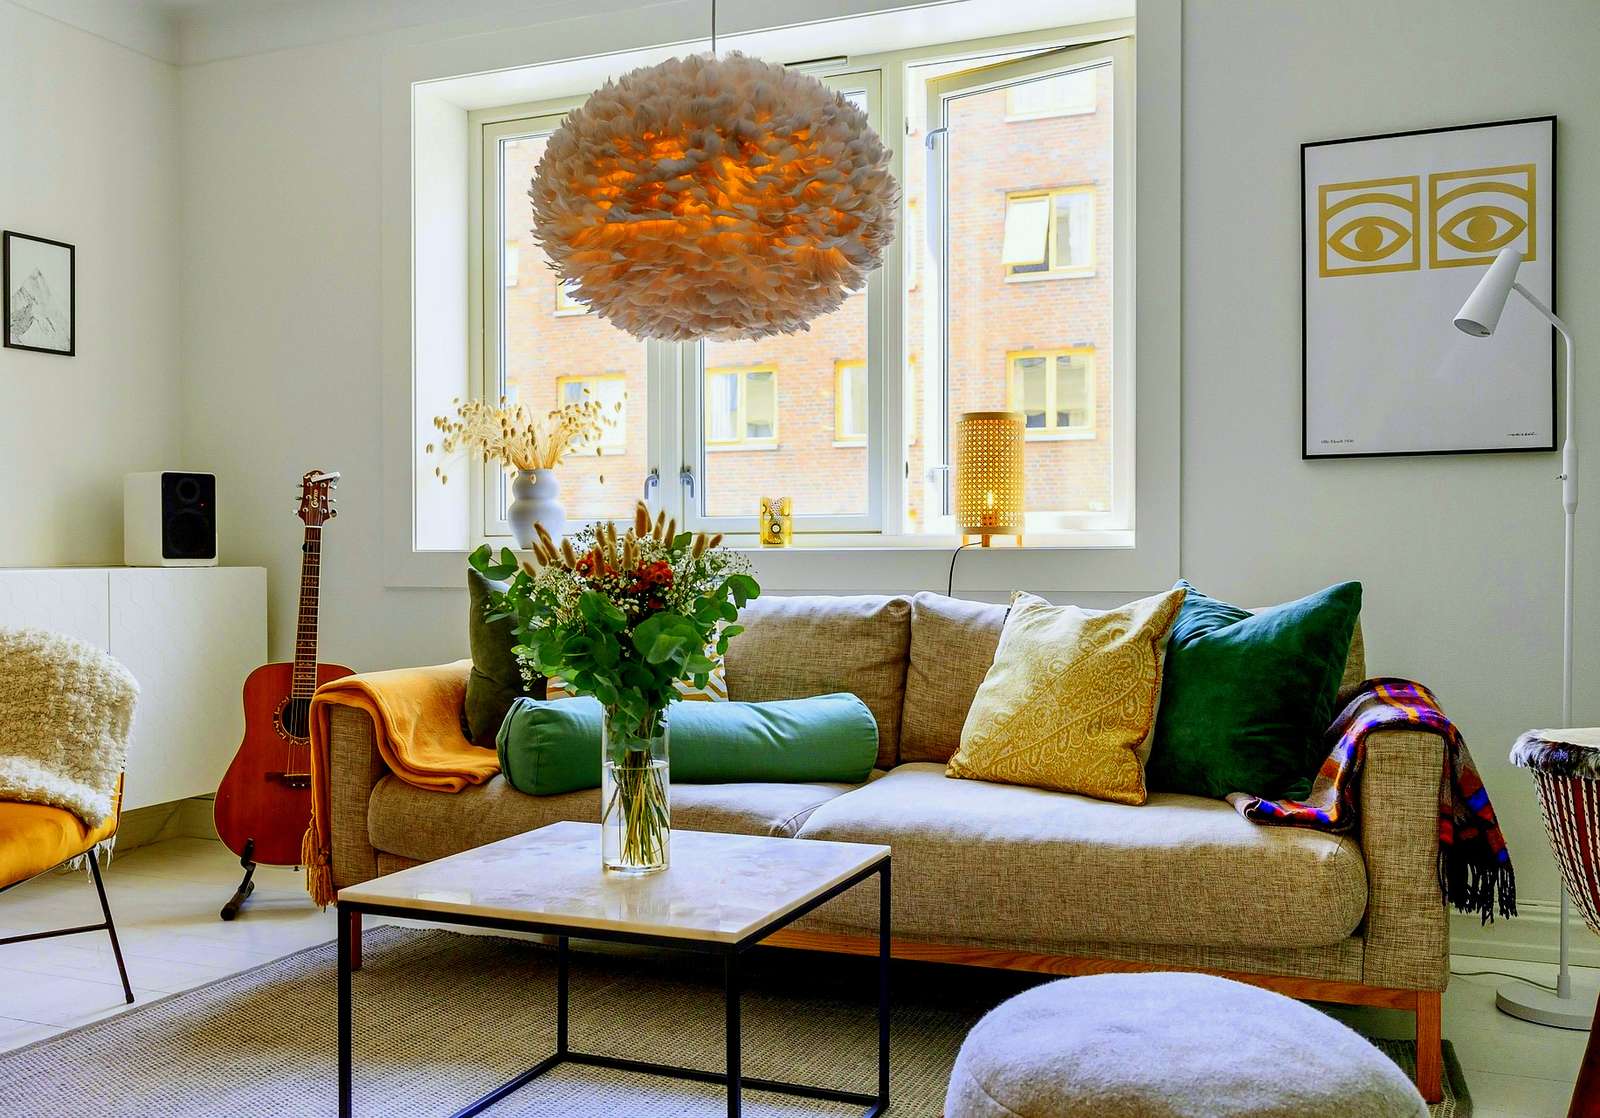 Uma moderna sala de estar em um apartamento em um prédio de apartamentos puzzle online